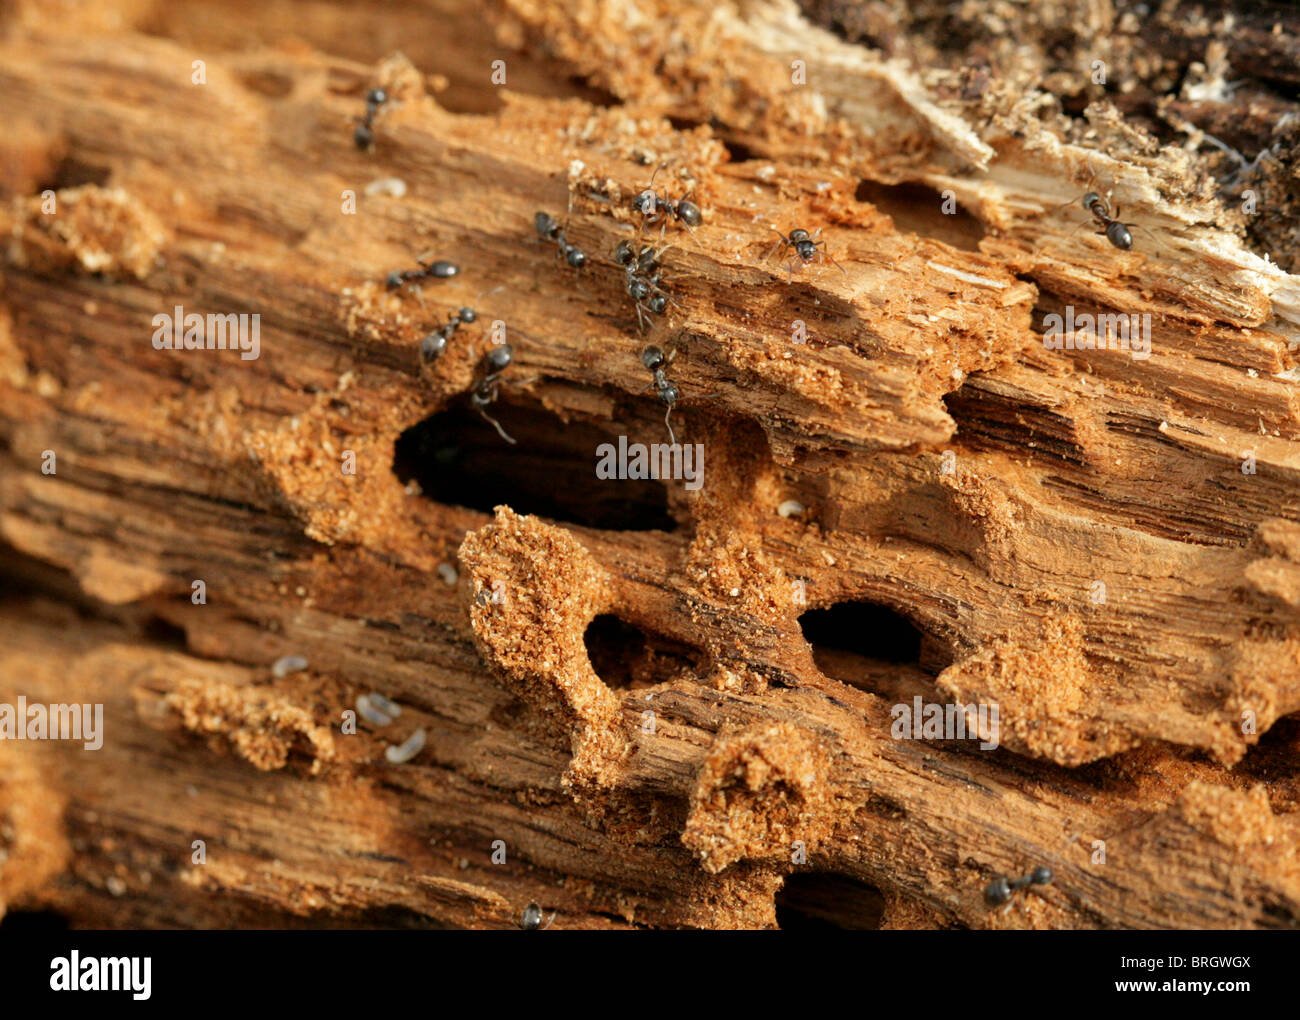 Schwarze Ameise Nest und Maden in einem alten abgestorbenen Baum, Lasius Niger, Lasiini, Ameisen, Vespoidea, Taillenwespen, Formicinae, Hymenoptera Stockfoto